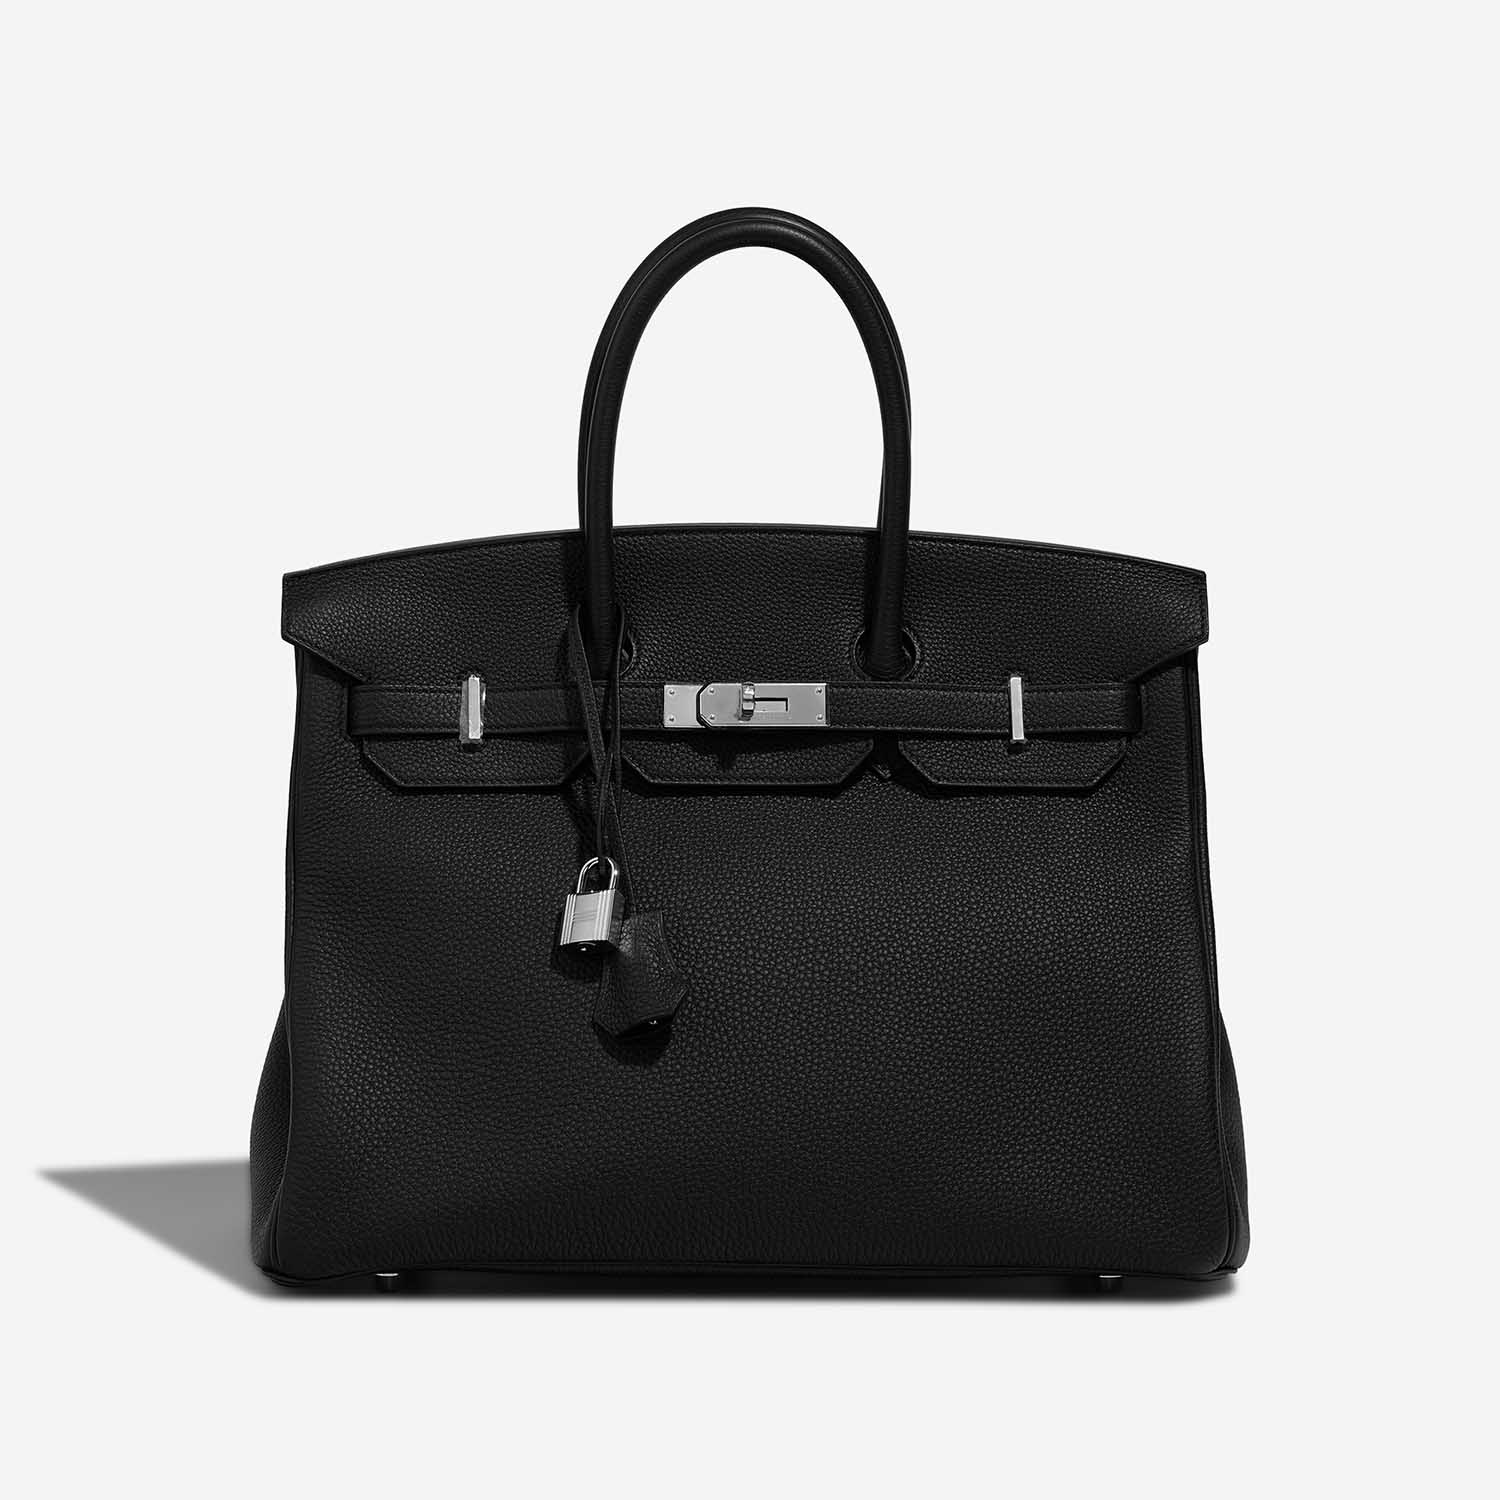 Hermès Birkin 35 Black Front S | Verkaufen Sie Ihre Designer-Tasche auf Saclab.com